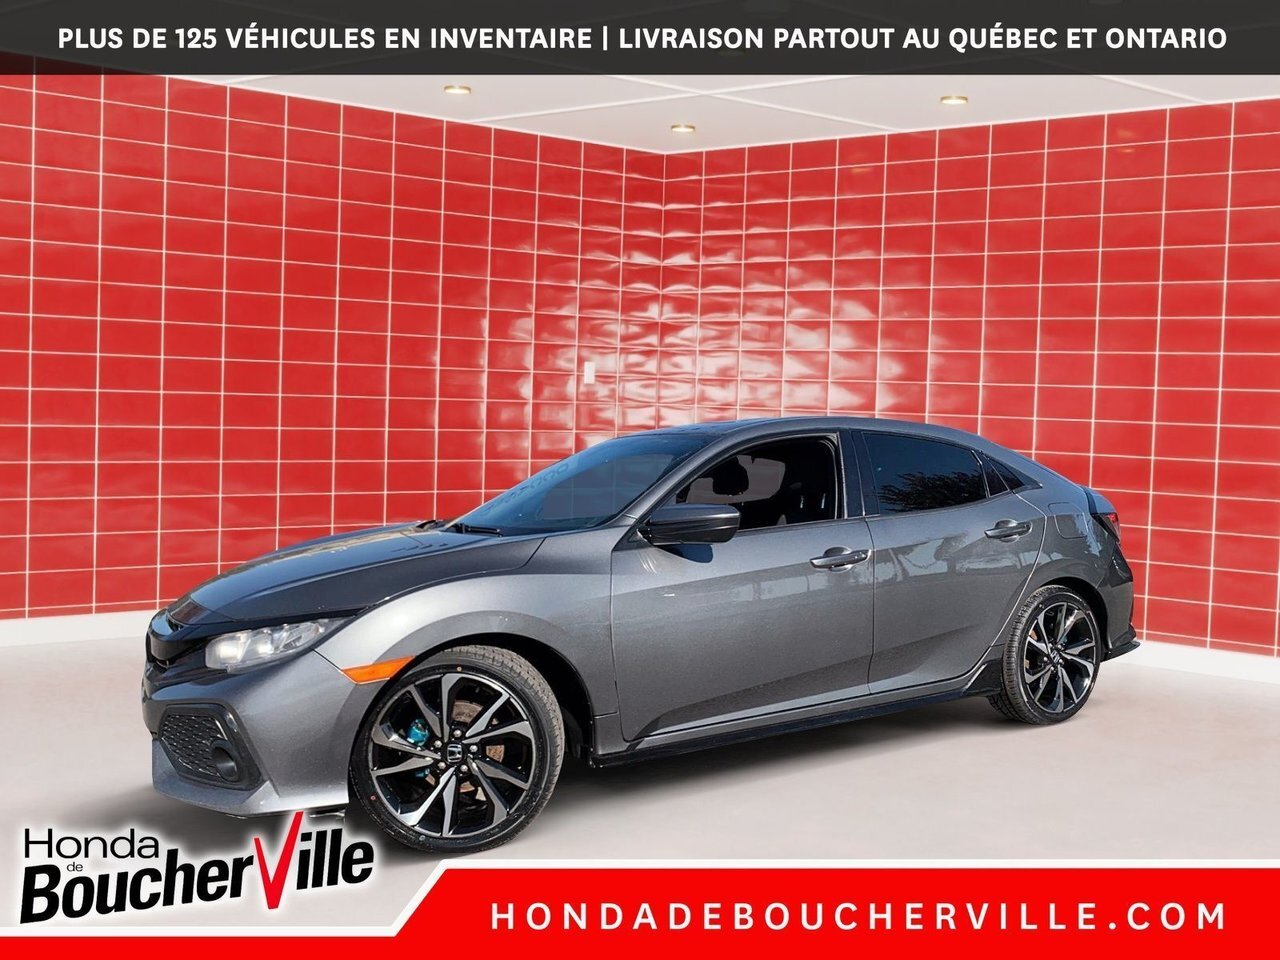 2017 Honda Civic Hatchback Sport MANUELLE, TURBO, MAGS 18 POUCES